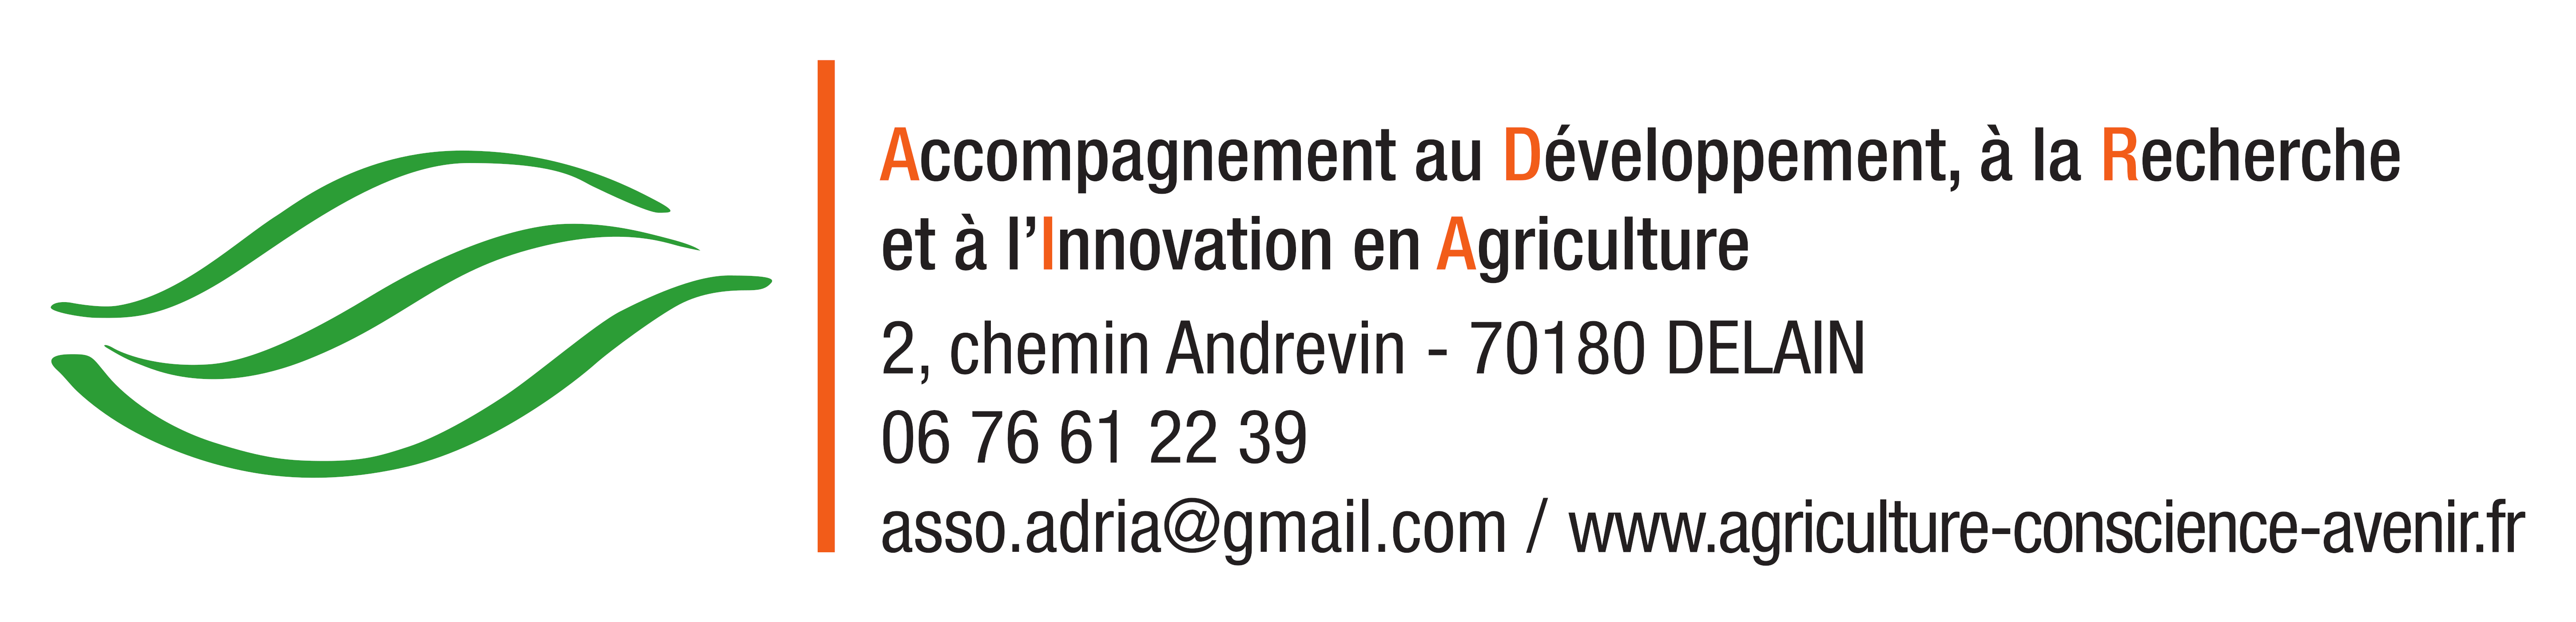 Agriculture Conscience et Avenir (SC ADRIA)